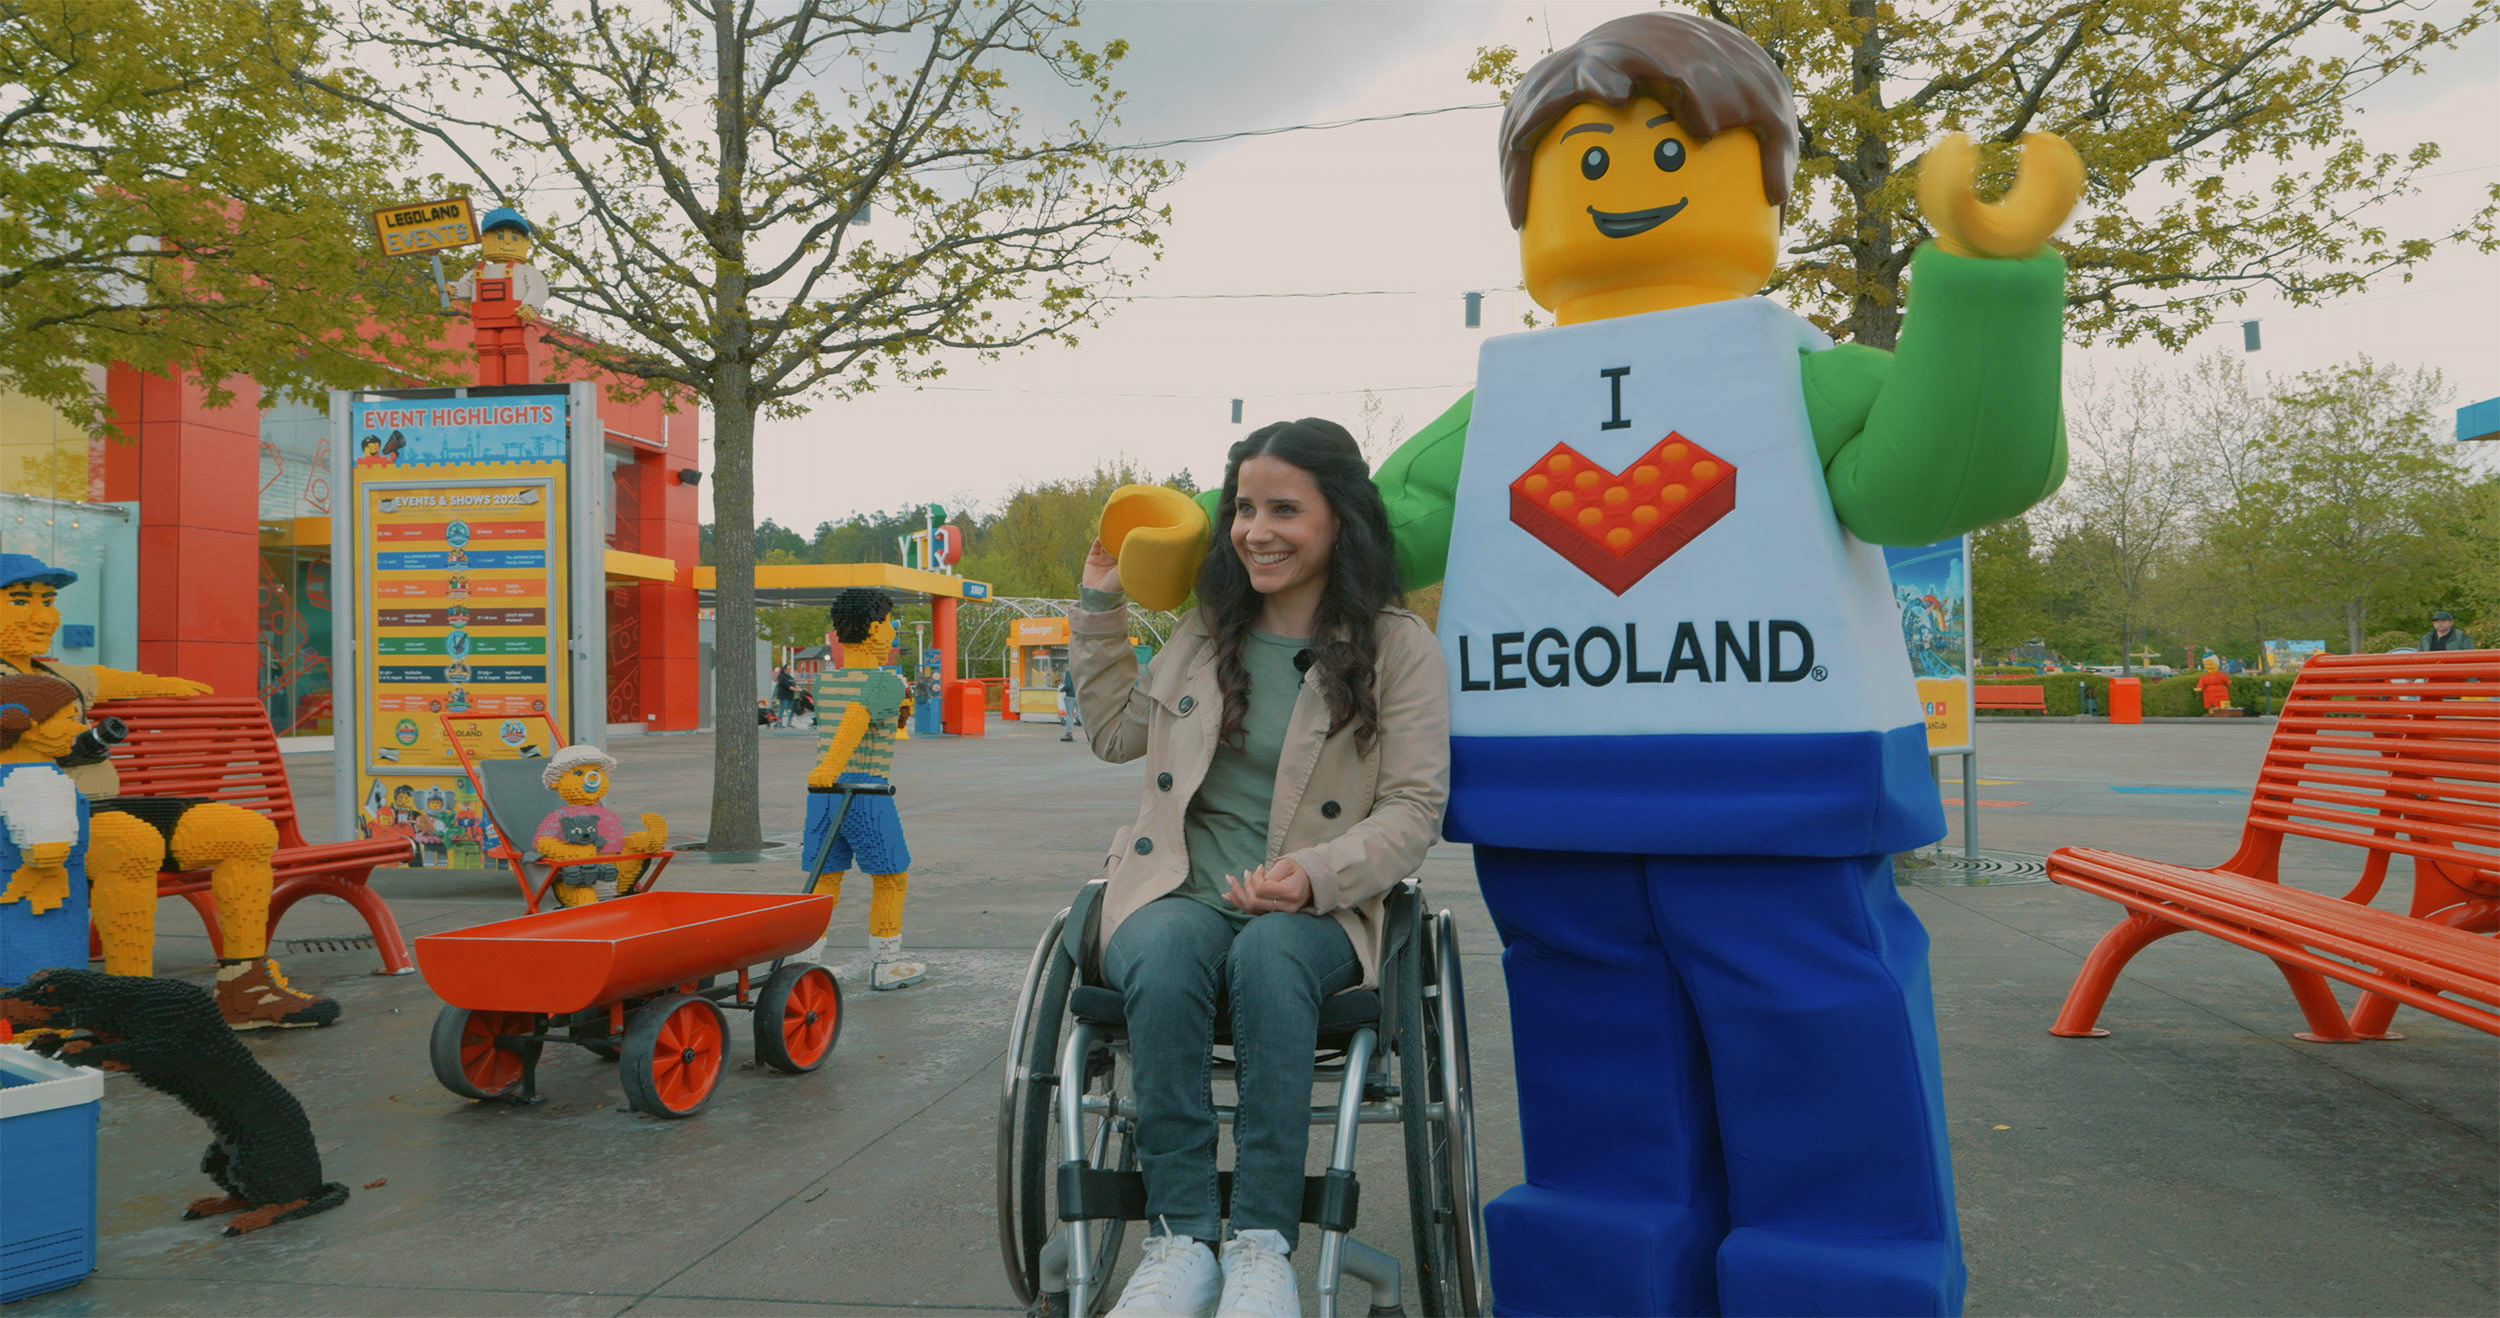 Junge Frau im Rollstuhl und ein LEGO Charakter im Eingangsbereich des LEGOLAND Deutschlands, wobei die Frau lacht, den LEGO Charakter an der Hand hält und dieser seinen Arm um ihre Schulter gelegt hat und mit dem anderen Arm nach vorne winkt.